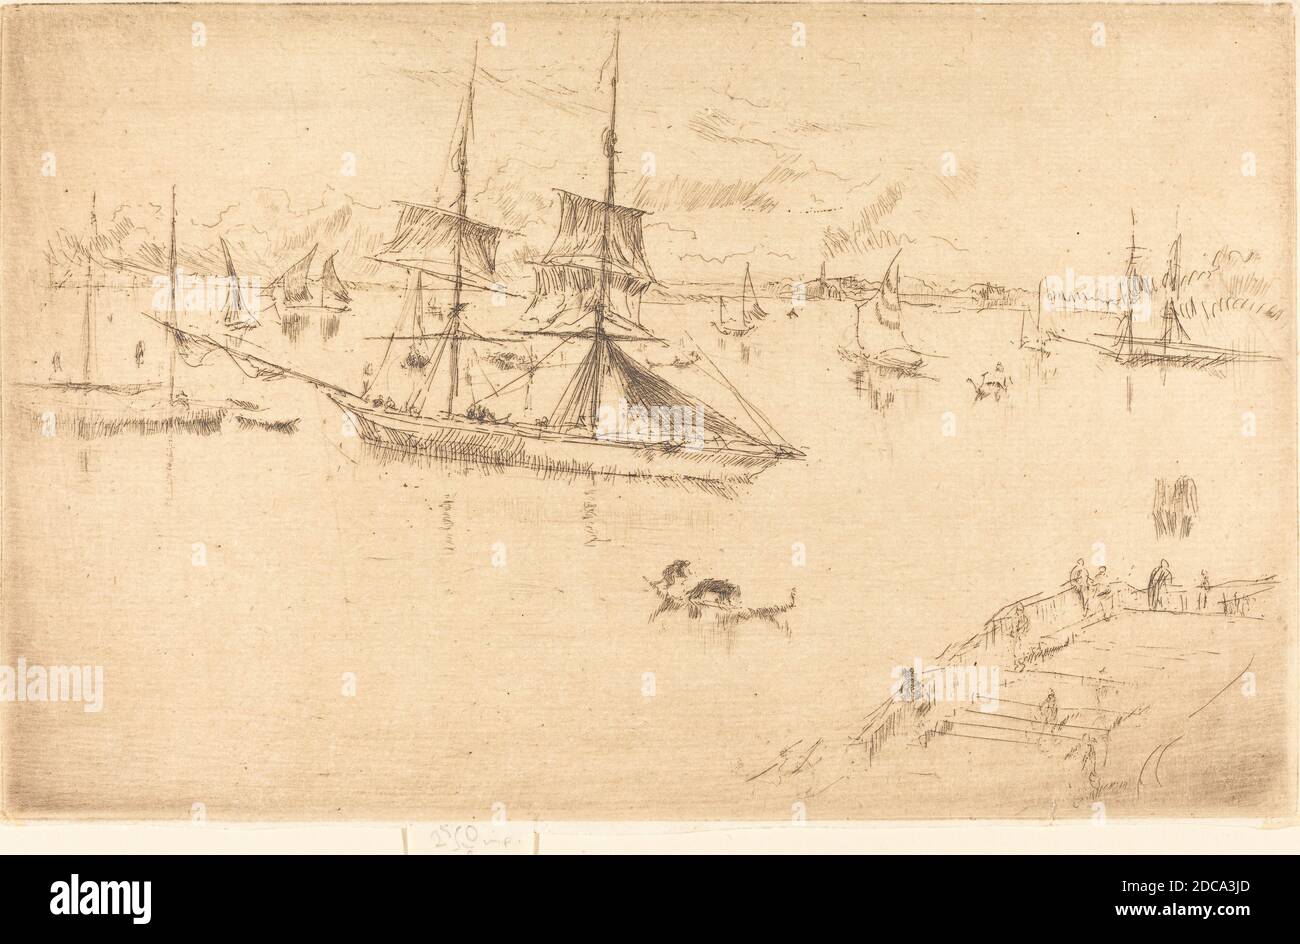 James McNeill Whistler, (artiste), américain, 1834 - 1903, lagune: Midi, Venise, série des vingt-six Etchings, (série), 1879/1880, gravure, plaque: 12.7 x 20.32 cm (5 x 8 po), feuille (avec languette avec signature): 13.49 x 20.48 cm (5 5/16 x 8 1/16 po Banque D'Images